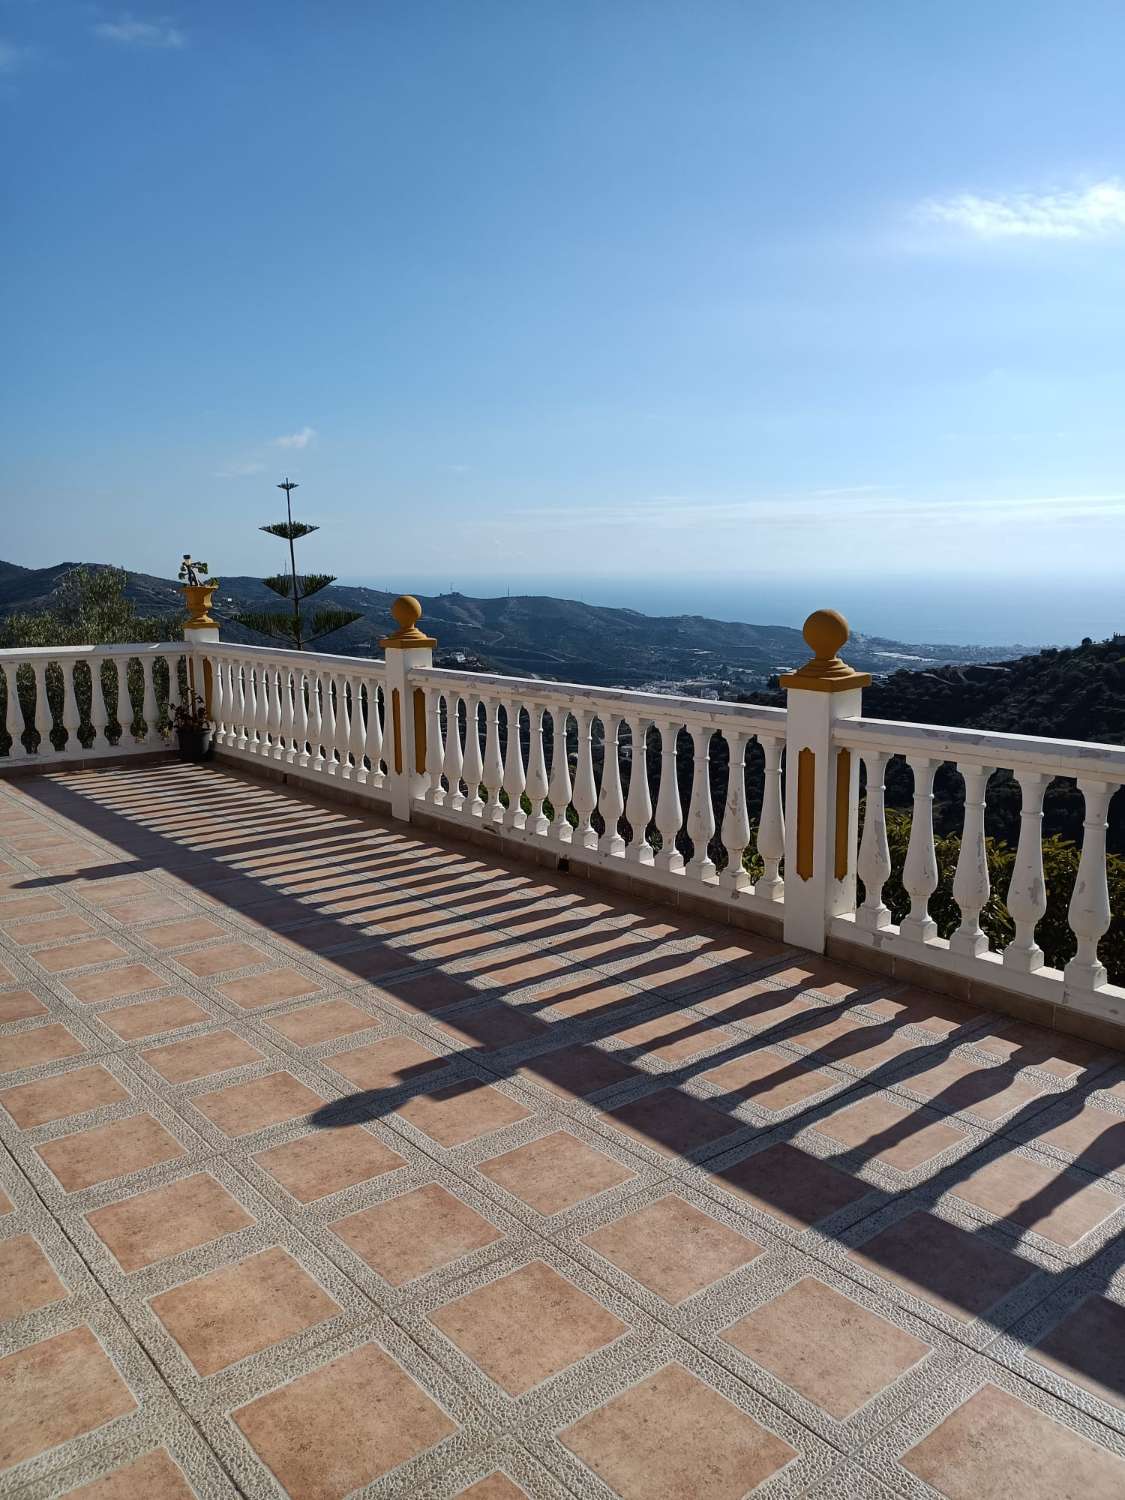 Chalet plus adapté aux invités et terrasse panoramique avec vue. (C)